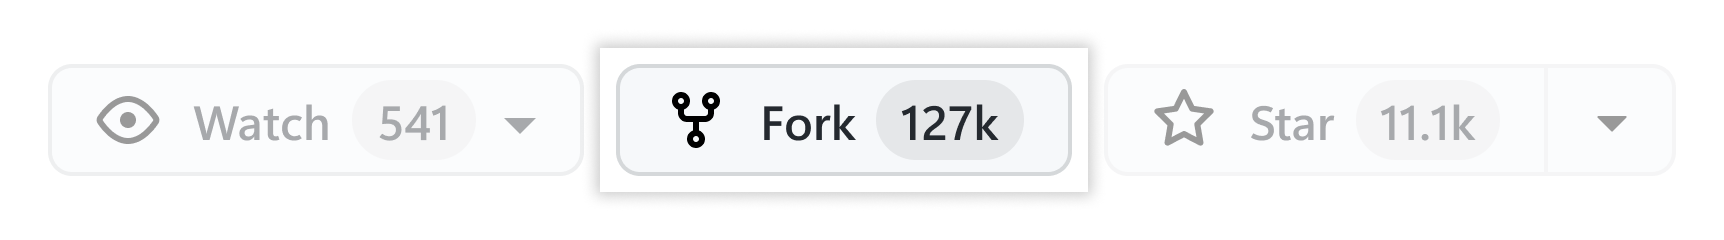 Botão Criar Fork